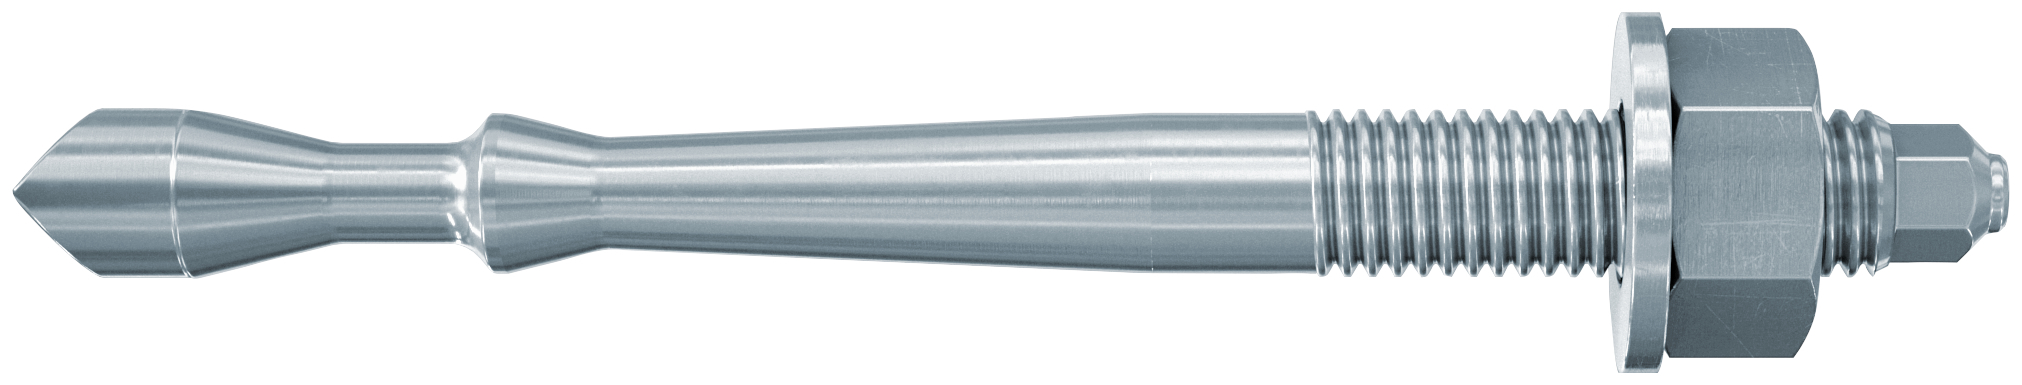 fischer Barra multicono in acciaio FHB II-A S M12x75/165 per ancorante chimico FIS HB (1 Pz.) Barra multicono corta in acciaio zincato classe 8.8. Massime prestazioni a trazione in calcestruzzo fessurato e a ridotte distanze dai bordi..